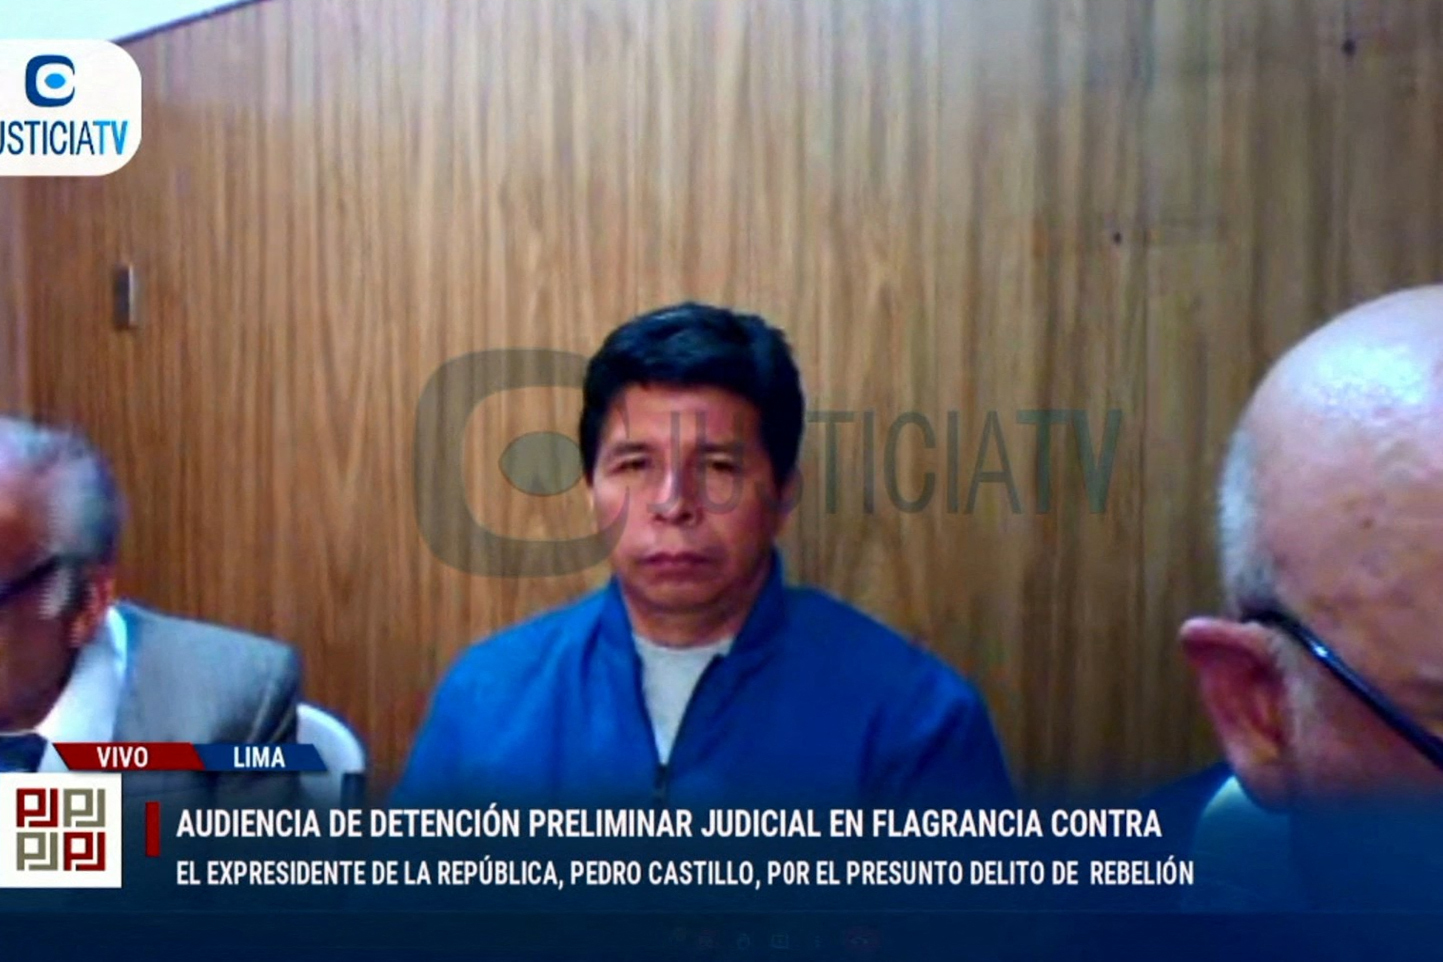 La ruta de los sobornos que cobraba Castillo y su familia: de los baños de Presidencia a la ciudad de Chachapoyas